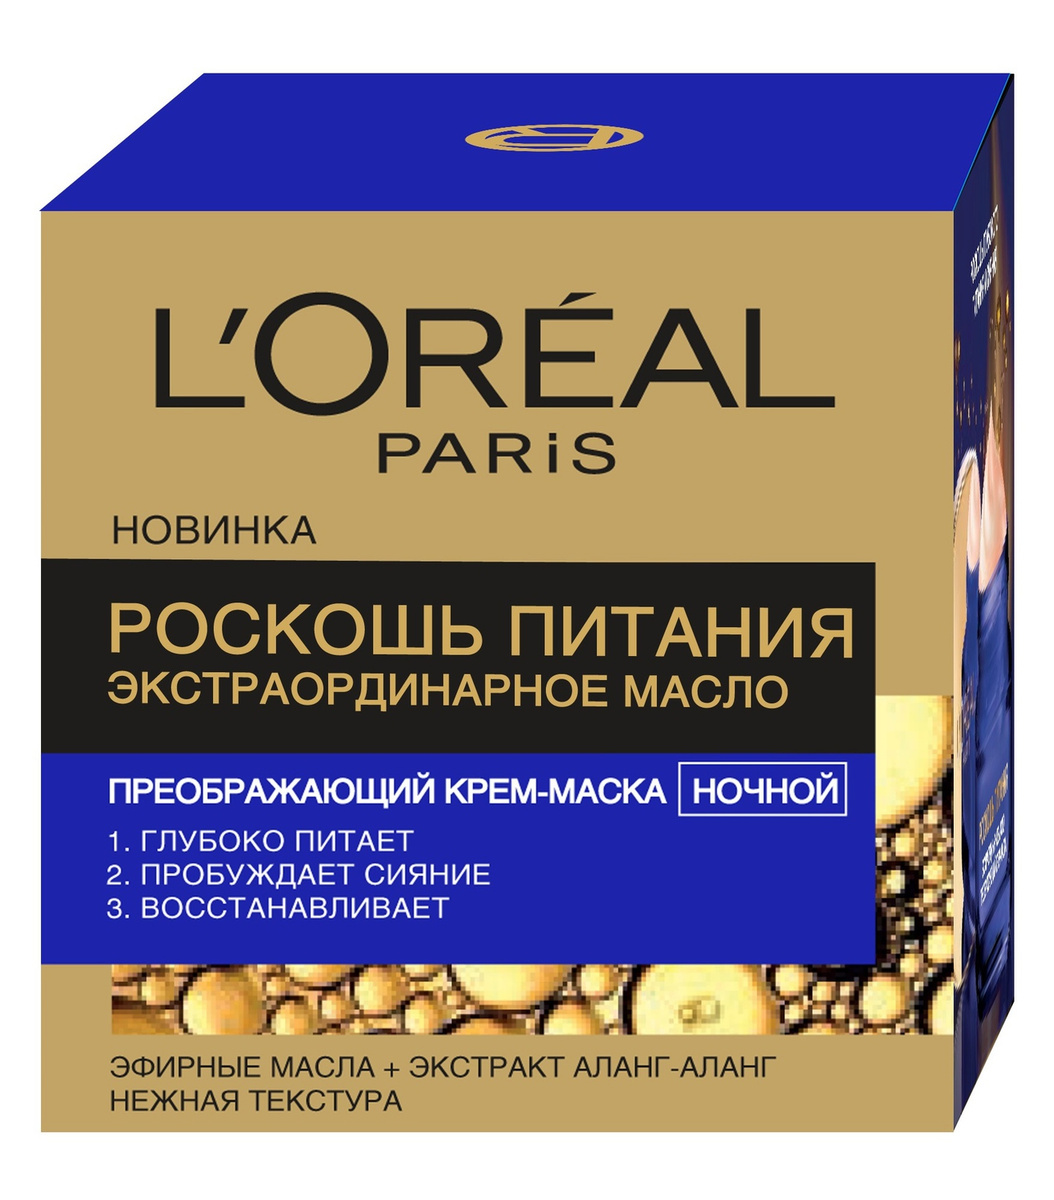 L'Oreal Paris "Роскошь Питания Экстраординарное Масло" Ночной Преображающий Крем-Маска для лица, 50 мл #1